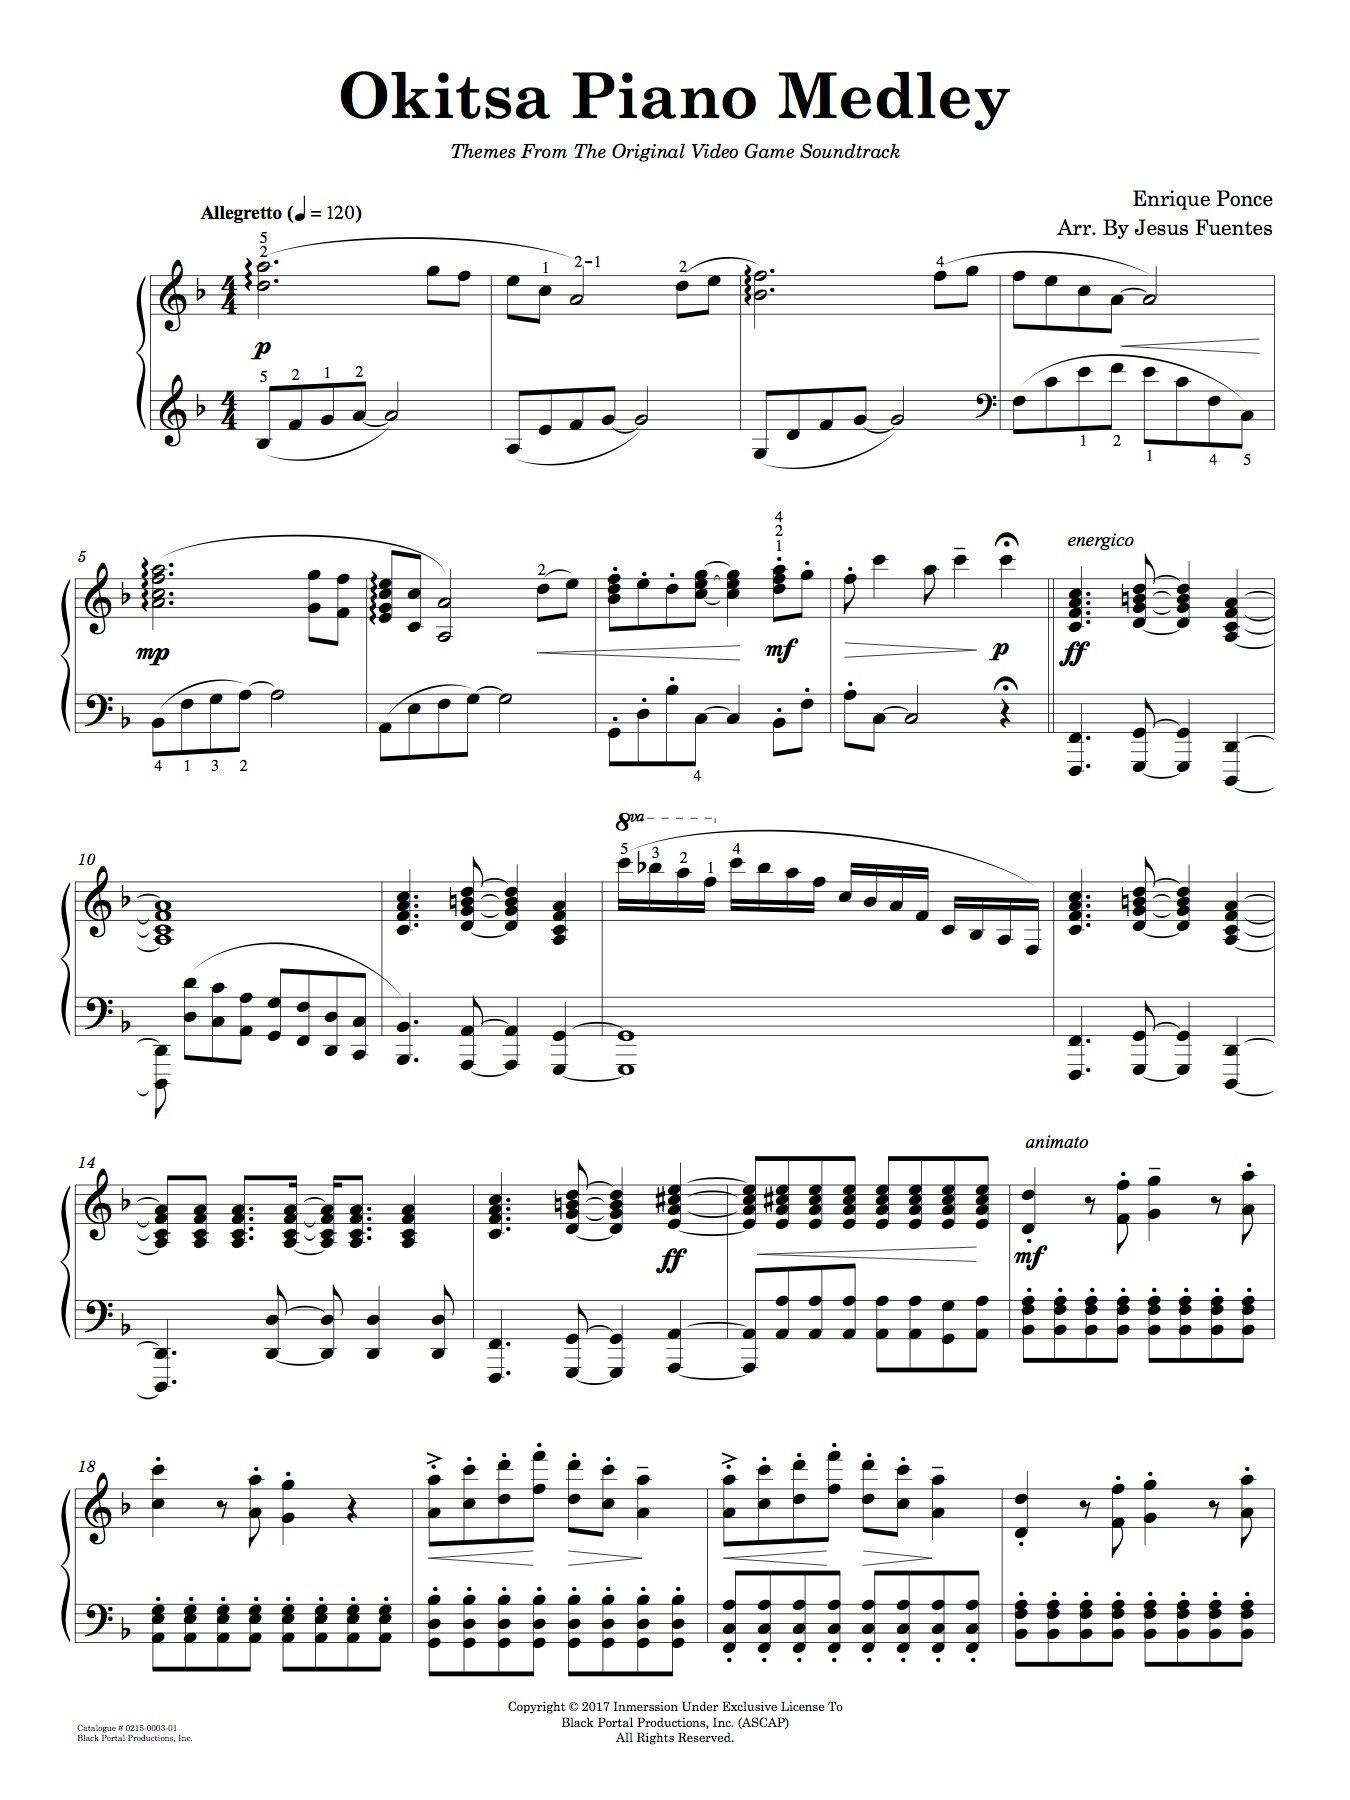 Okitsa Piano Medley2.jpg